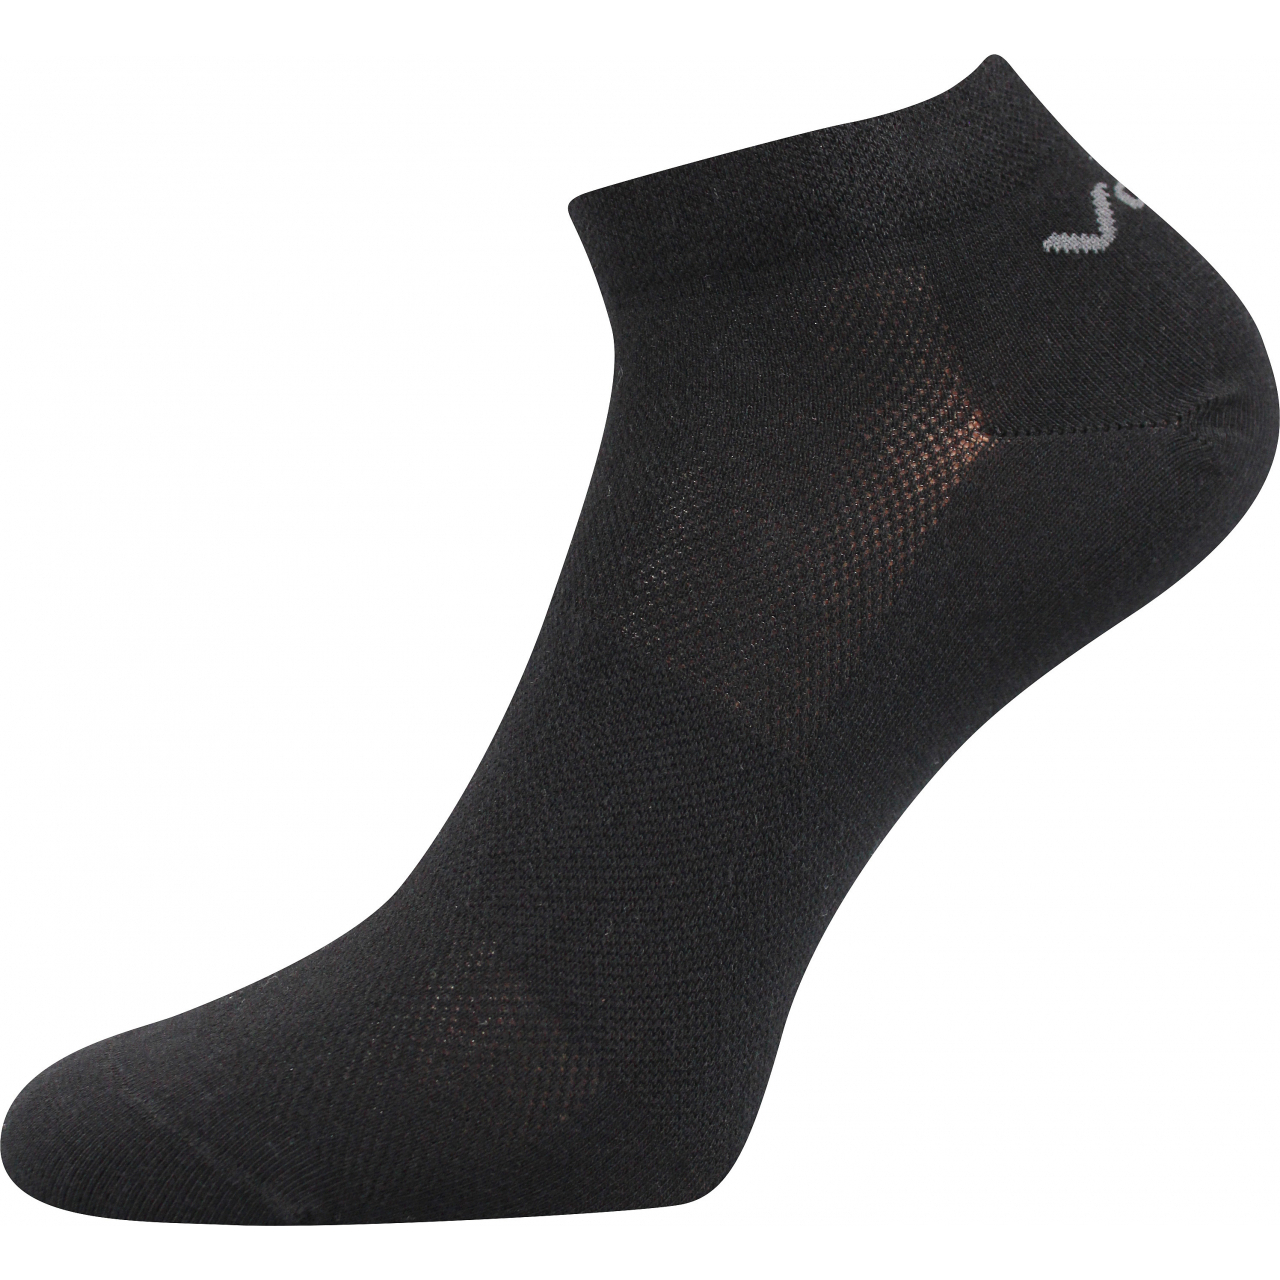 Ponožky unisex klasické Voxx Metys - černé, 39-42